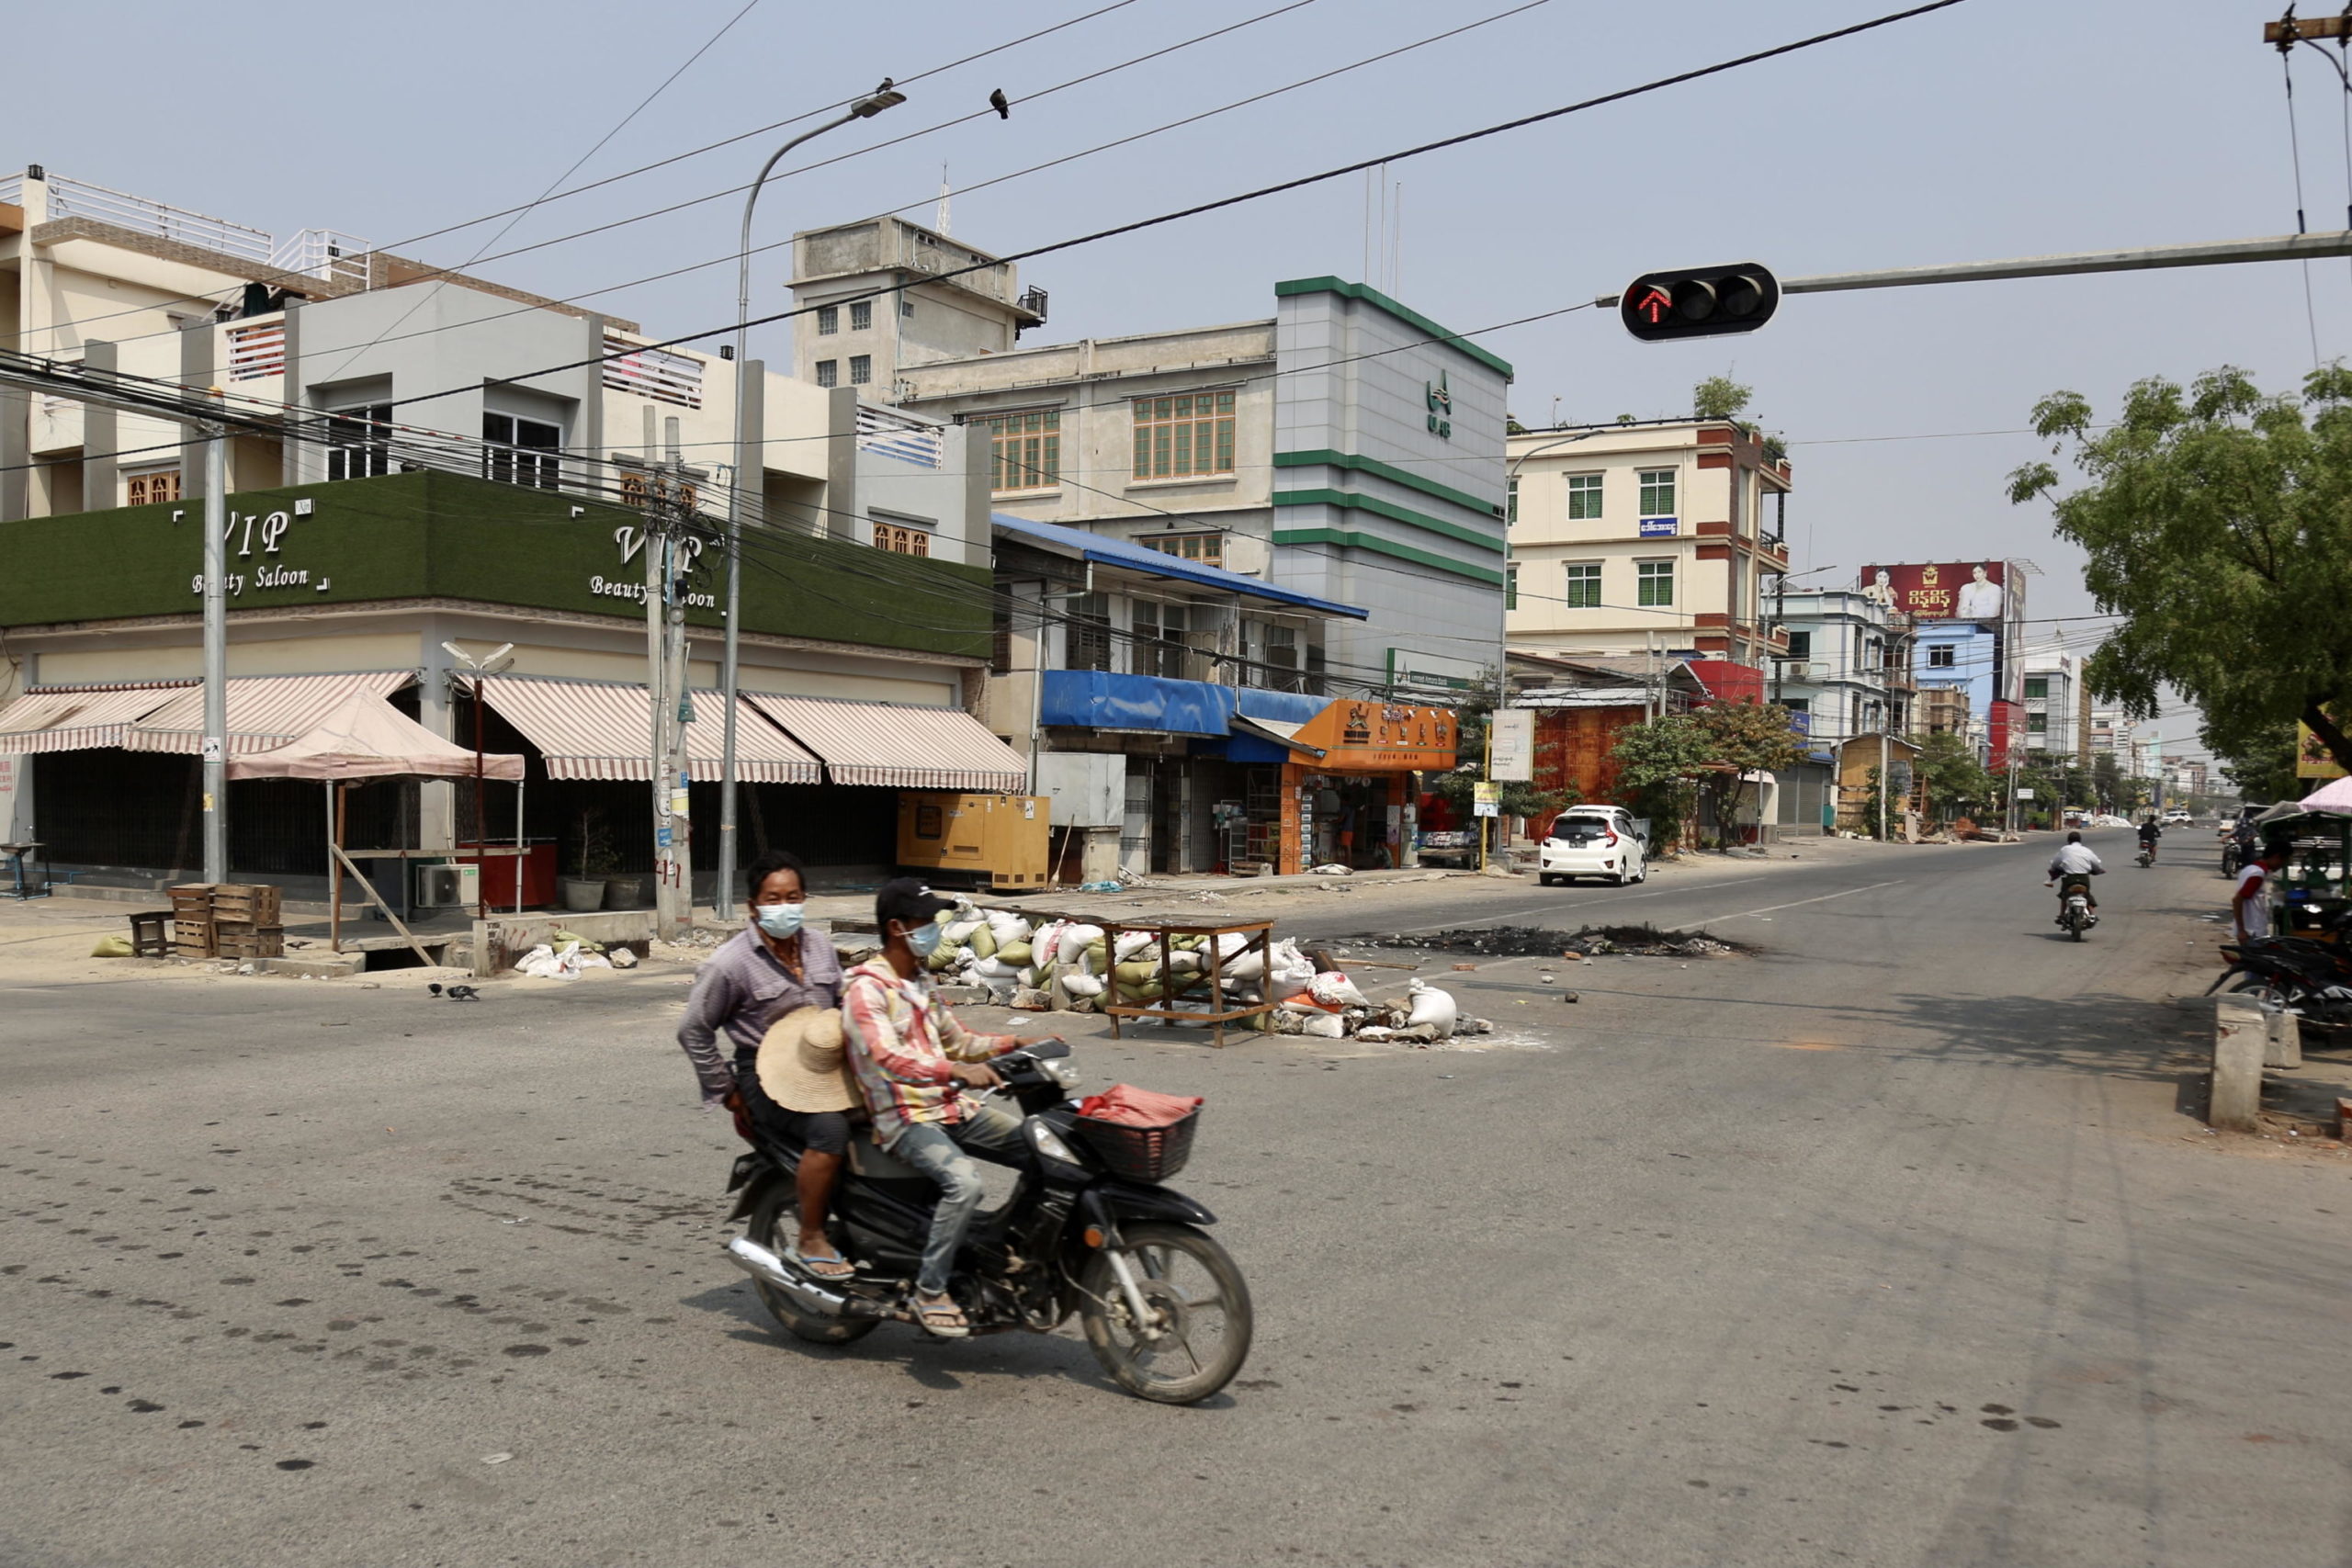 Una moto passa davanti a locali chiusi per protesta contro i militari